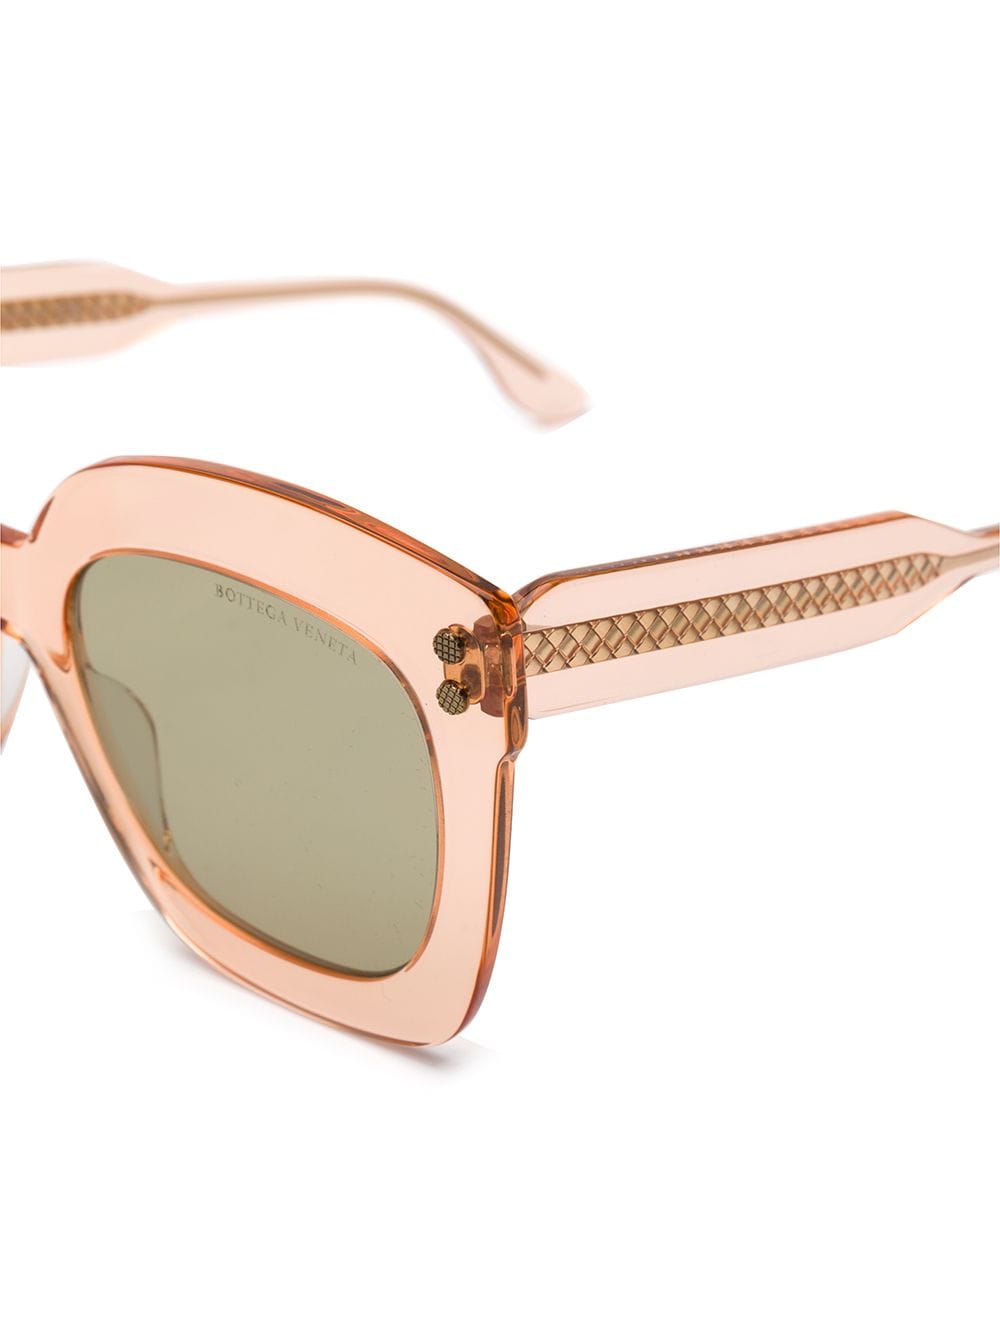 фото Bottega veneta eyewear солнцезащитные очки в прозрачной массивной оправе